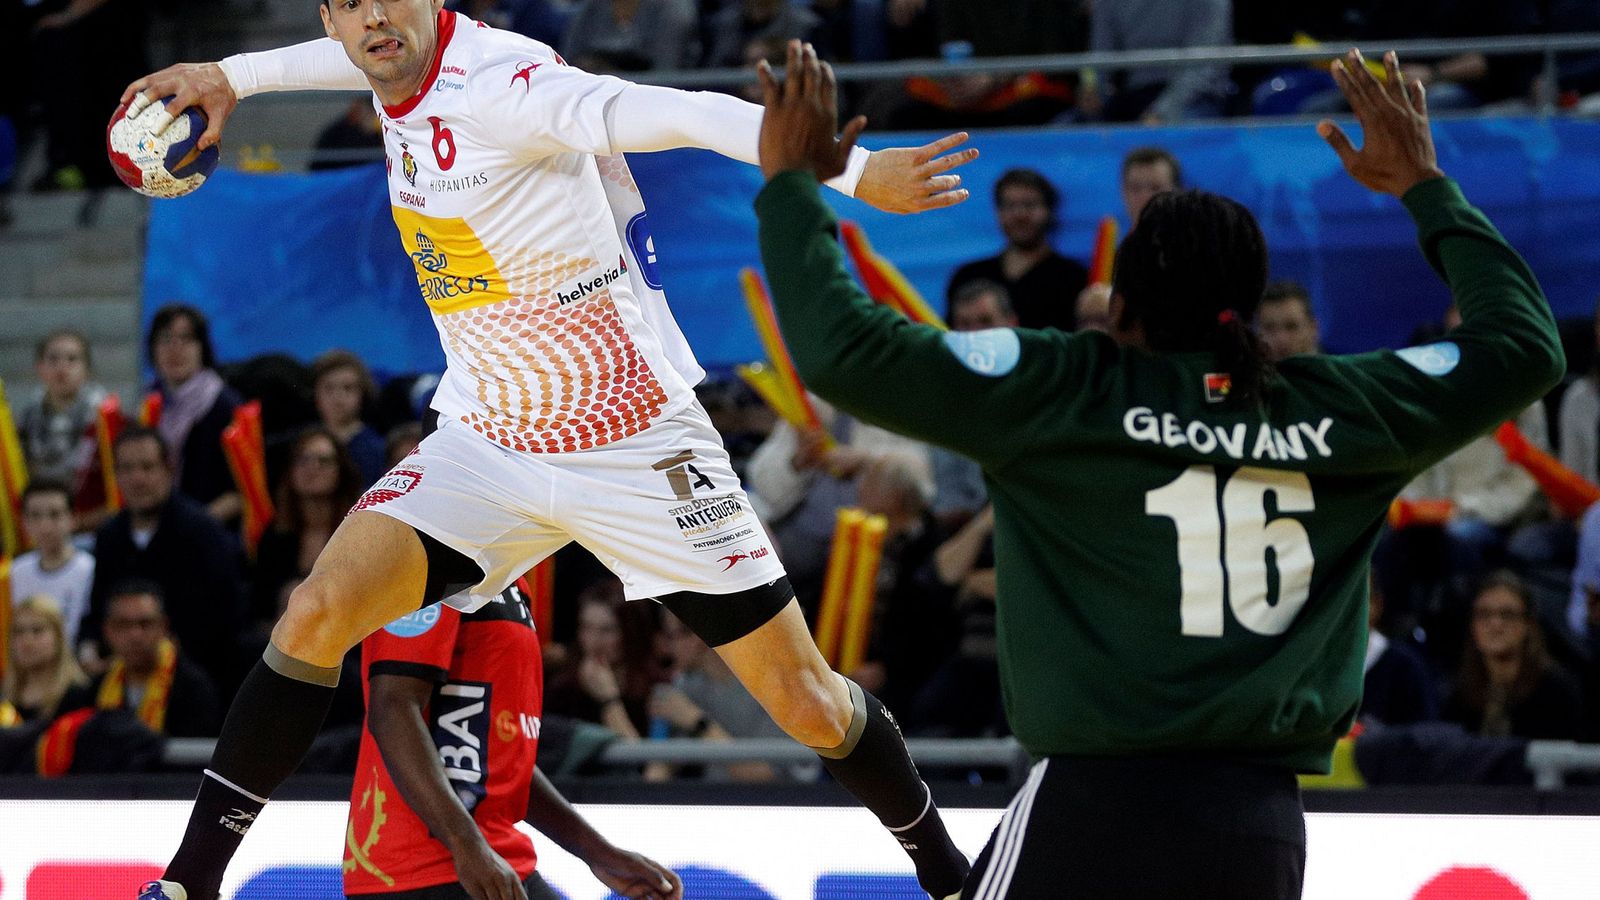 Foto: Men's handball - spain v angola - 2017 men's world championship main round - group b